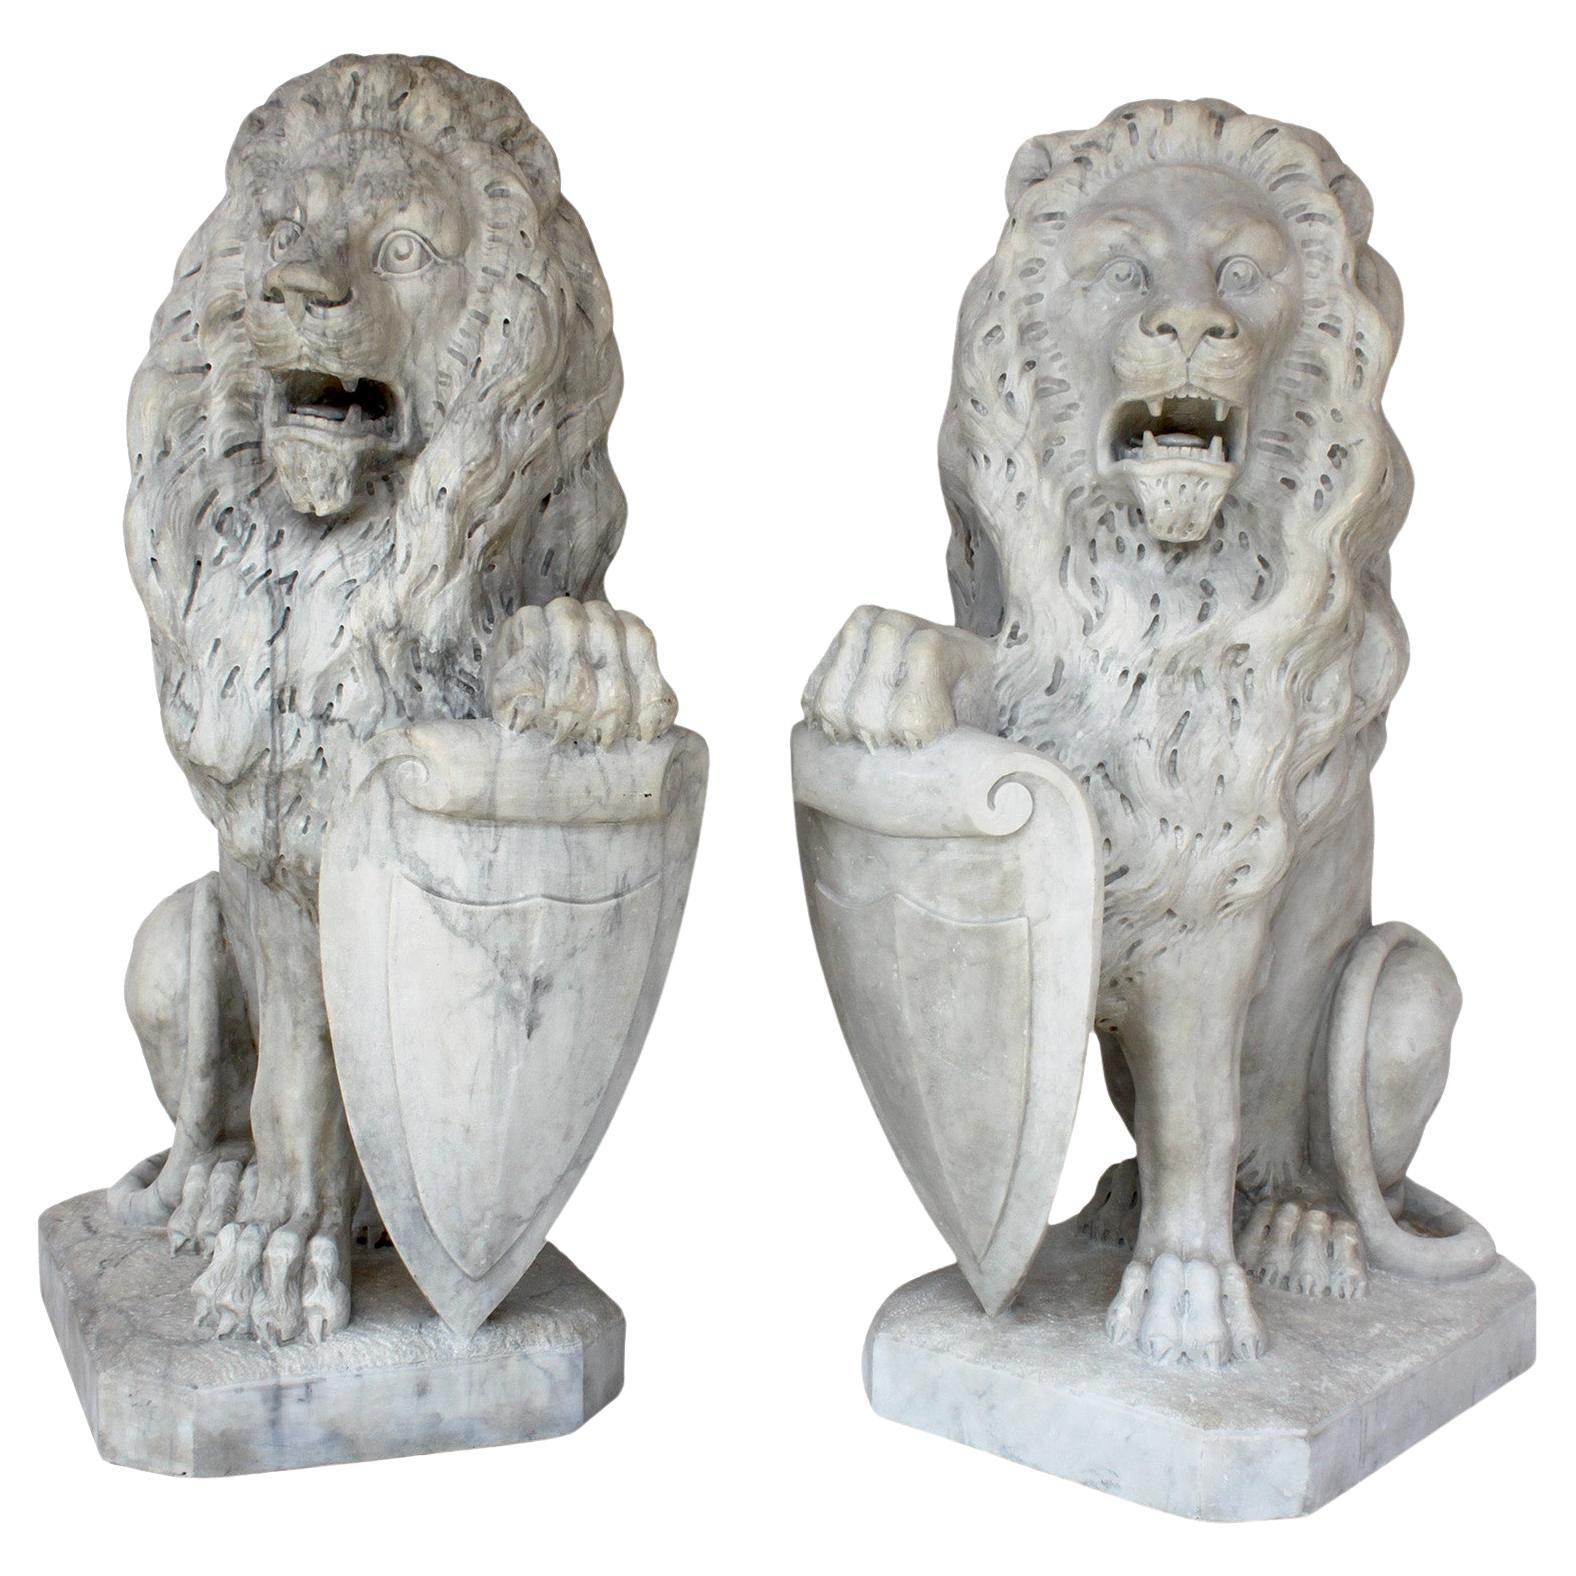  Paar palastartige Löwen aus geschnitztem Marmor im französischen Barockstil des 19. Jahrhunderts